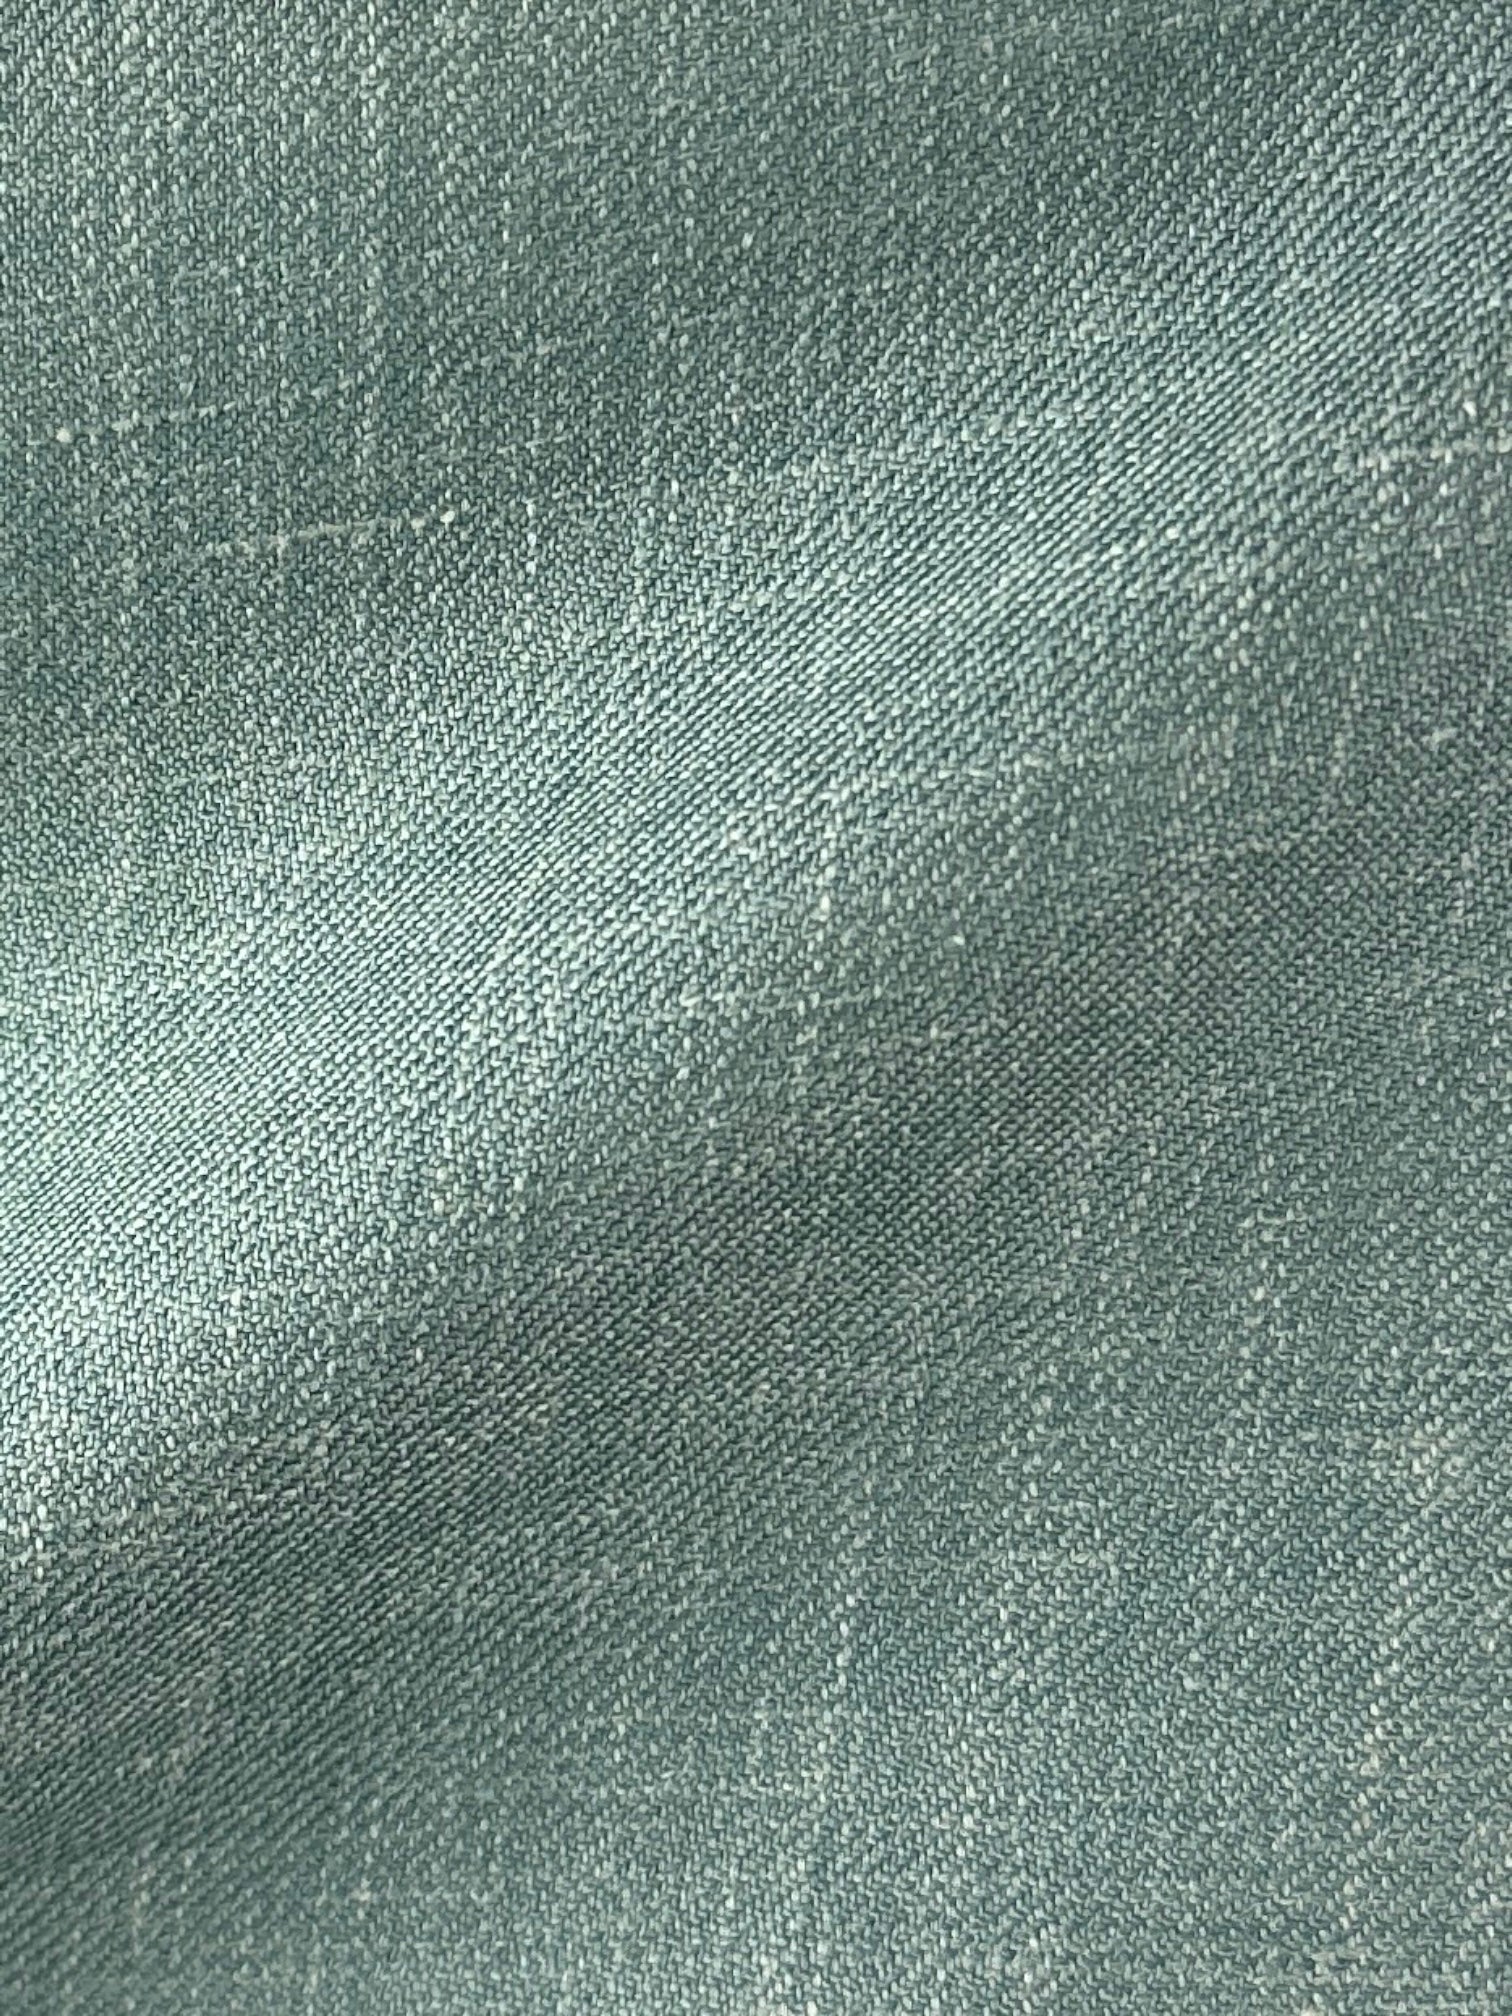 Corneliani Mint Green Wool, Silk & Linen Jacket